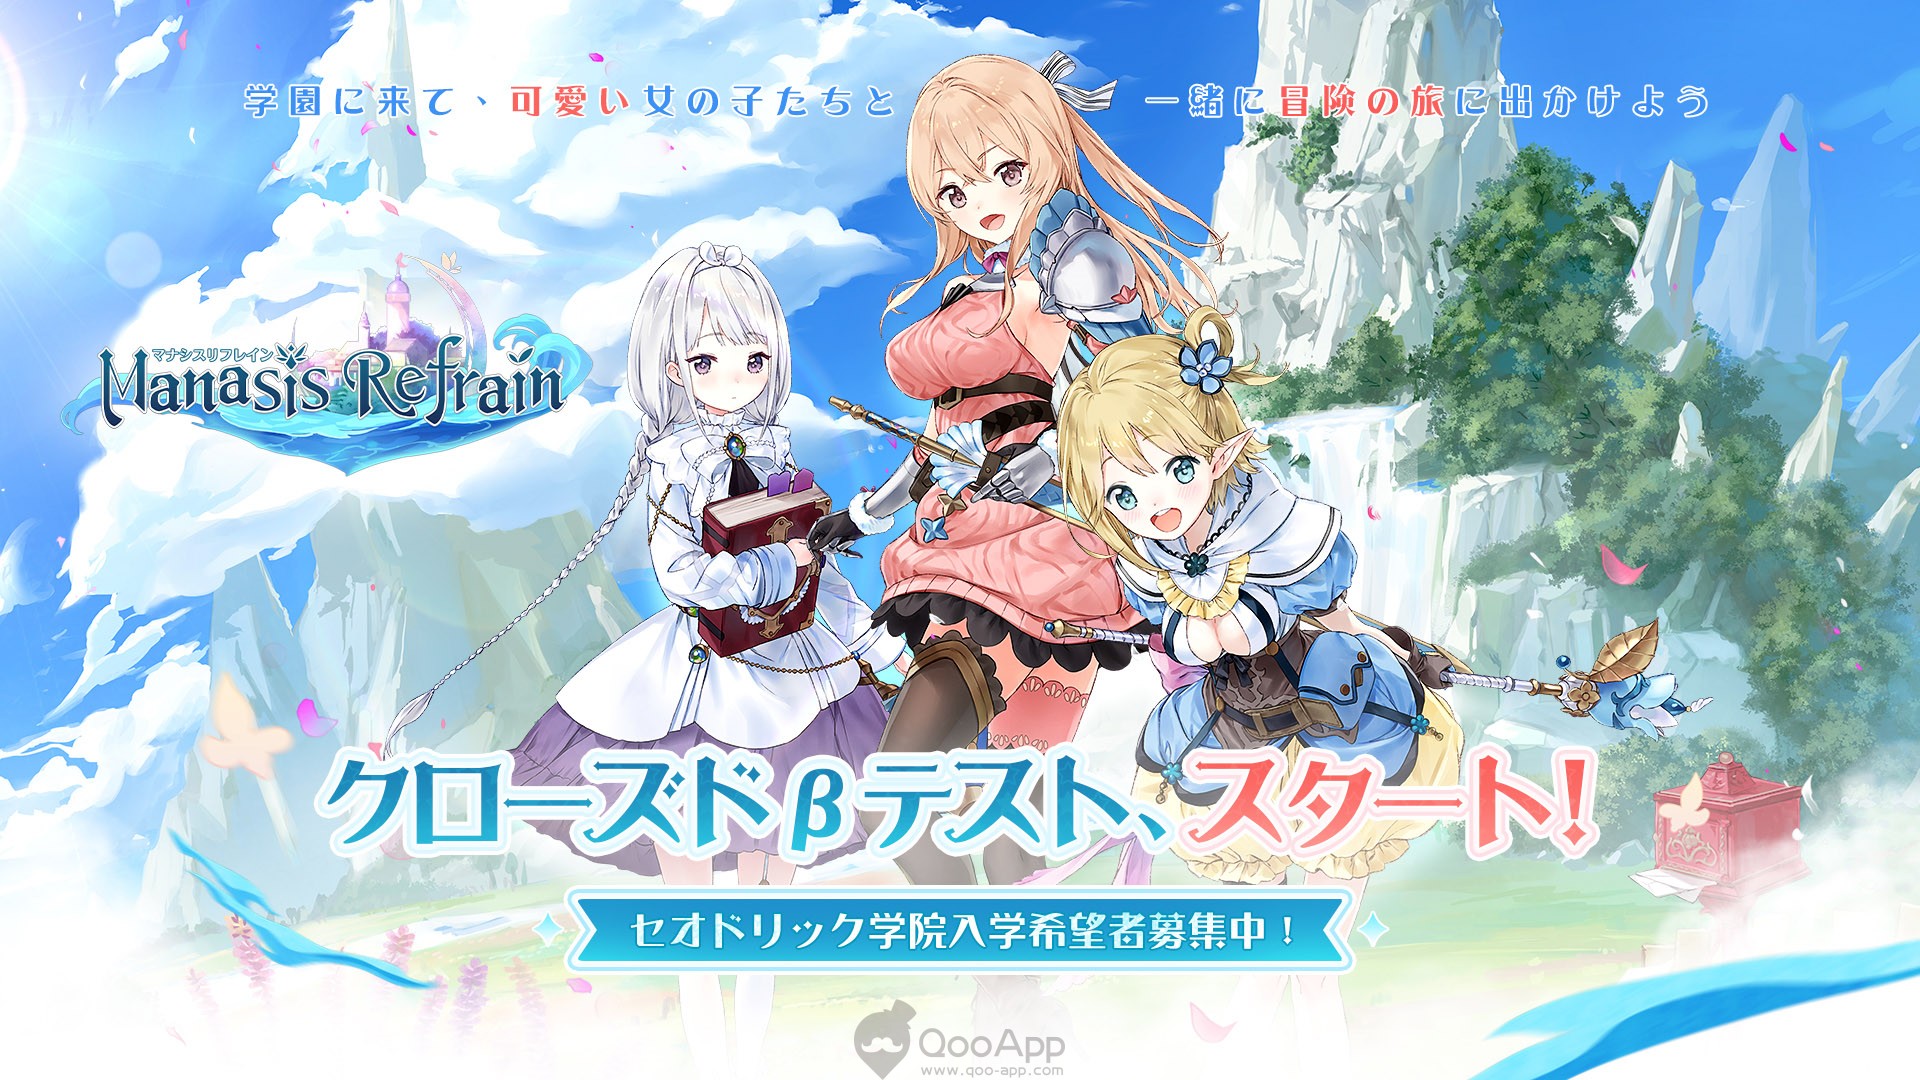 Manasis Refrain Bishōjo Mobile RPG Opens CBT on August 6